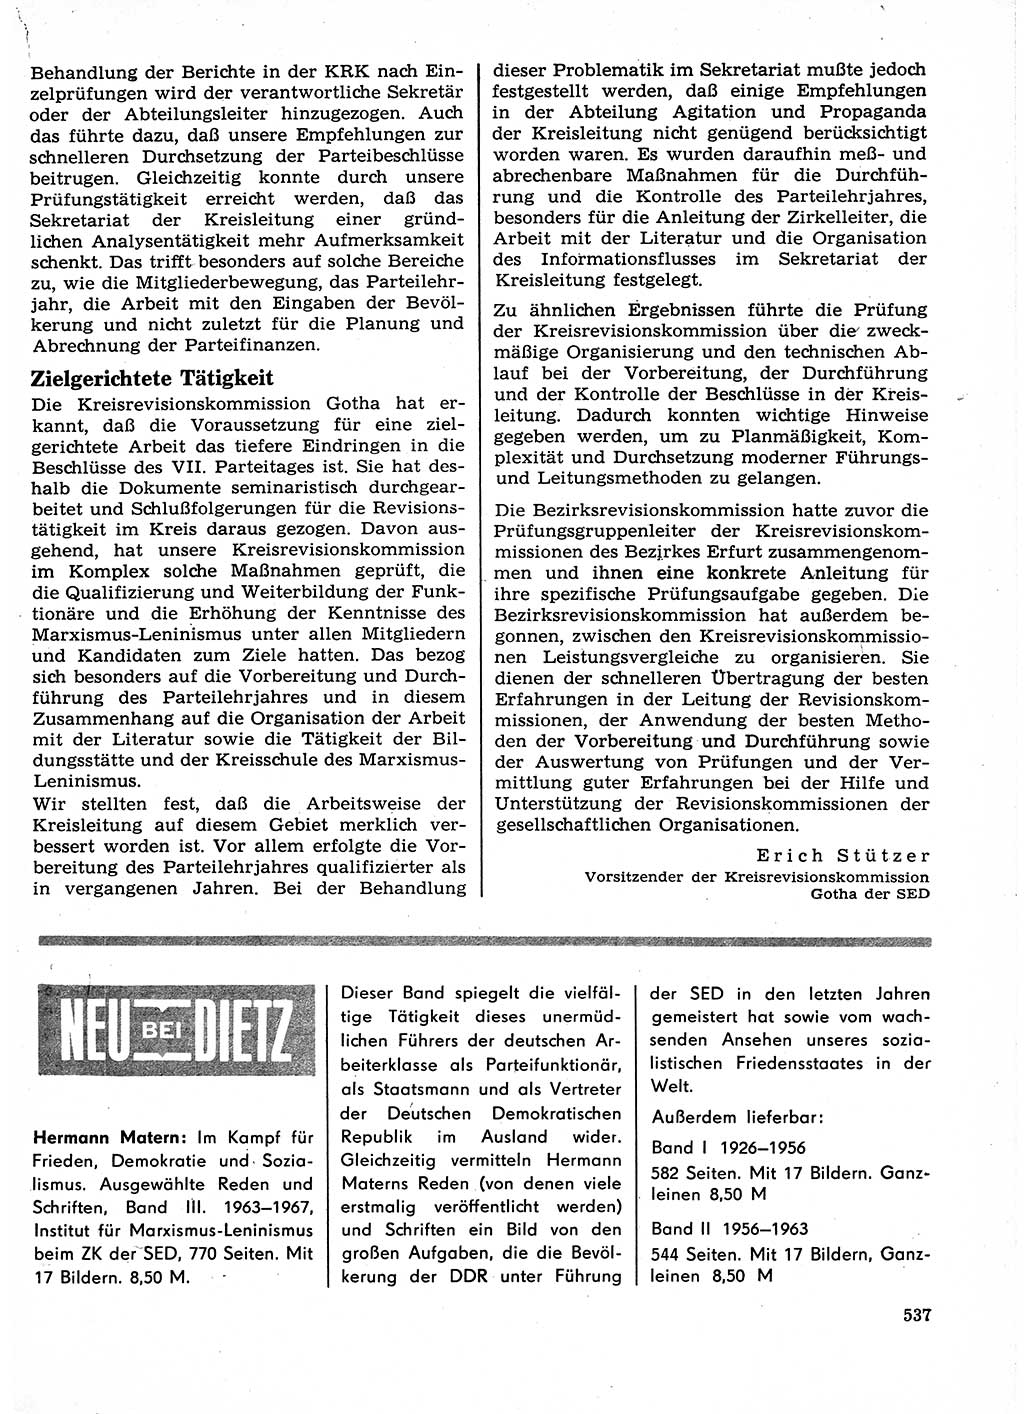 Neuer Weg (NW), Organ des Zentralkomitees (ZK) der SED (Sozialistische Einheitspartei Deutschlands) für Fragen des Parteilebens, 23. Jahrgang [Deutsche Demokratische Republik (DDR)] 1968, Seite 537 (NW ZK SED DDR 1968, S. 537)